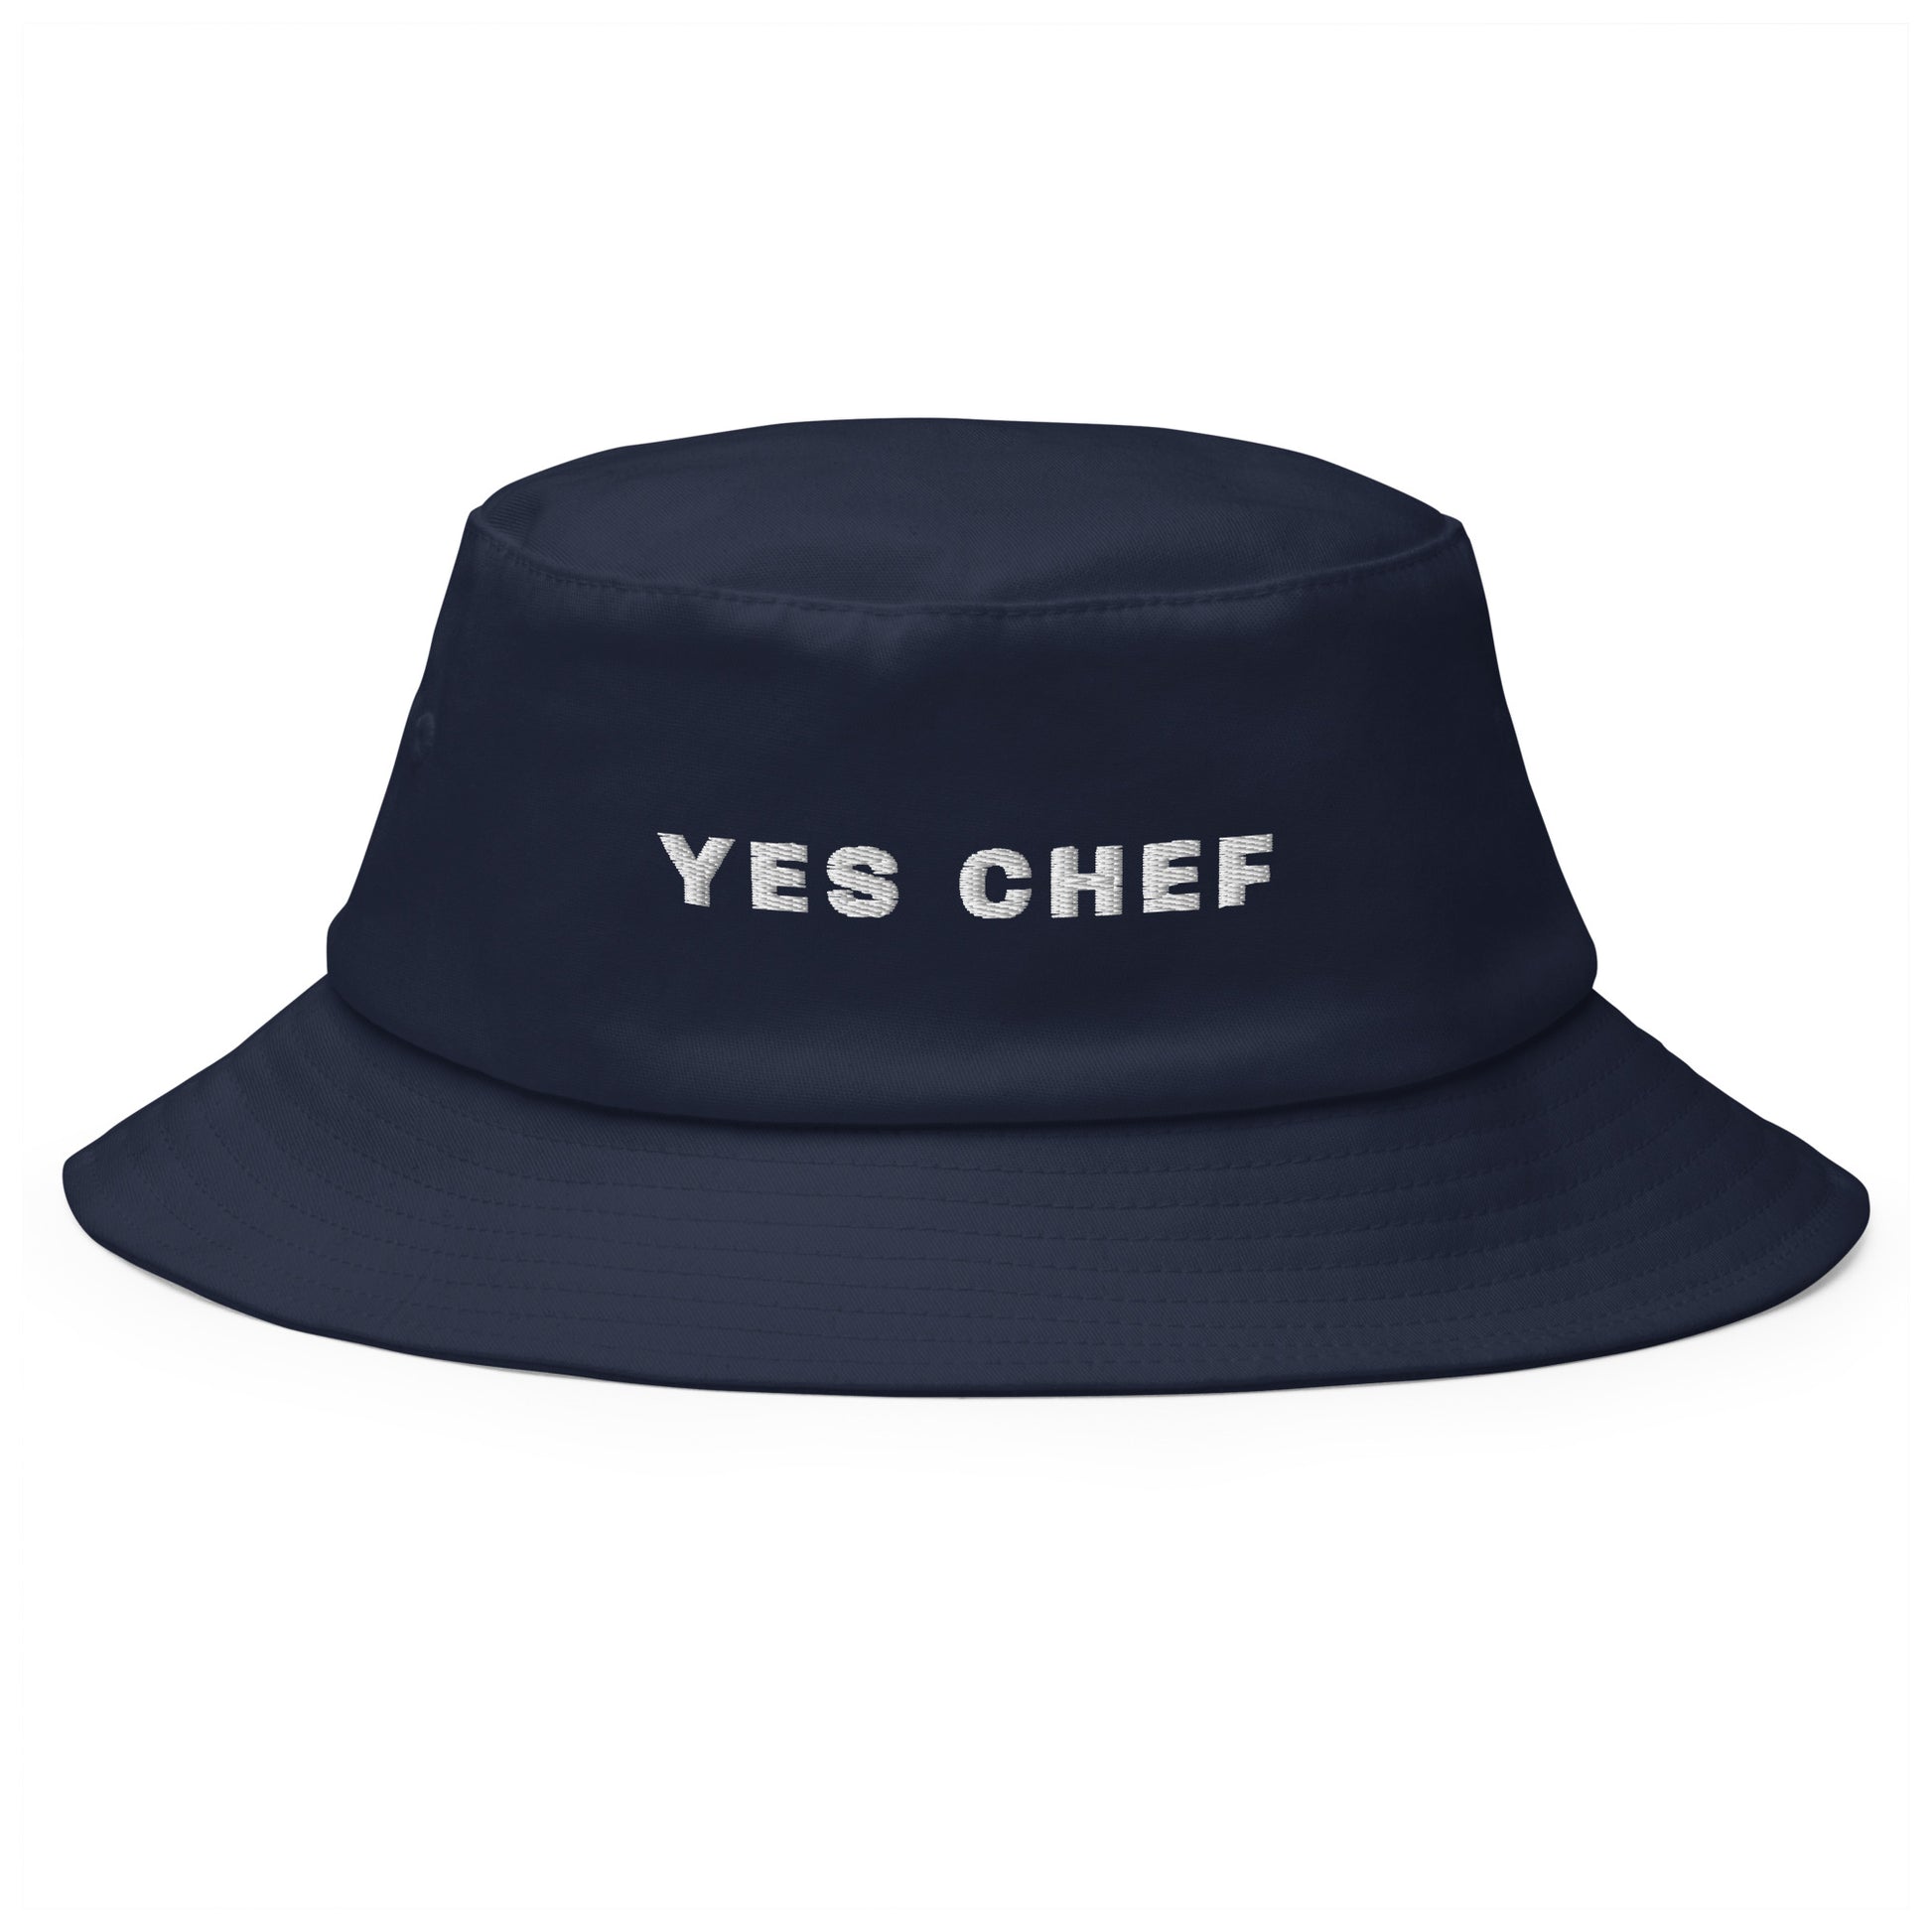 Produktfoto des bestickten Fischerhuts 'I YES CHEF' von YourCapGuy auf einem weißen Hintergrund. Der Hut ist in einem stilvollen Farbton gehalten, der aussagekräftige Schriftzug setzt einen humorvollen Akzent.